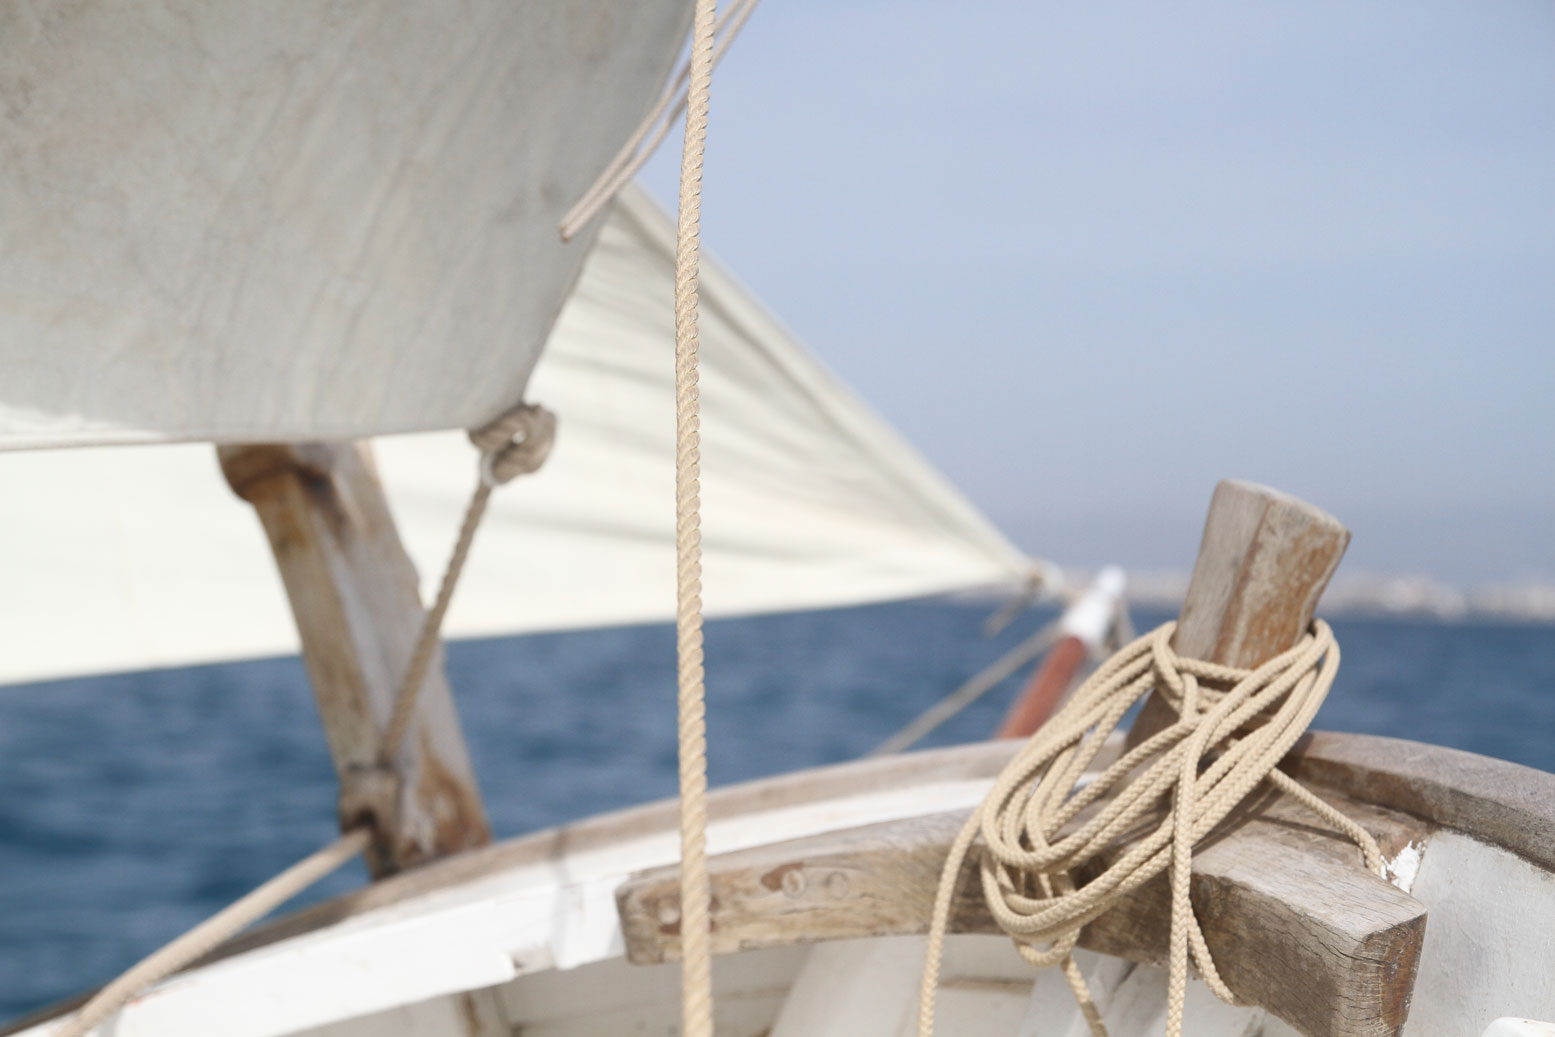 actualidad náutica, noticias náuticas, vela latina, vela, tradición marítima, embarcación tradiciona